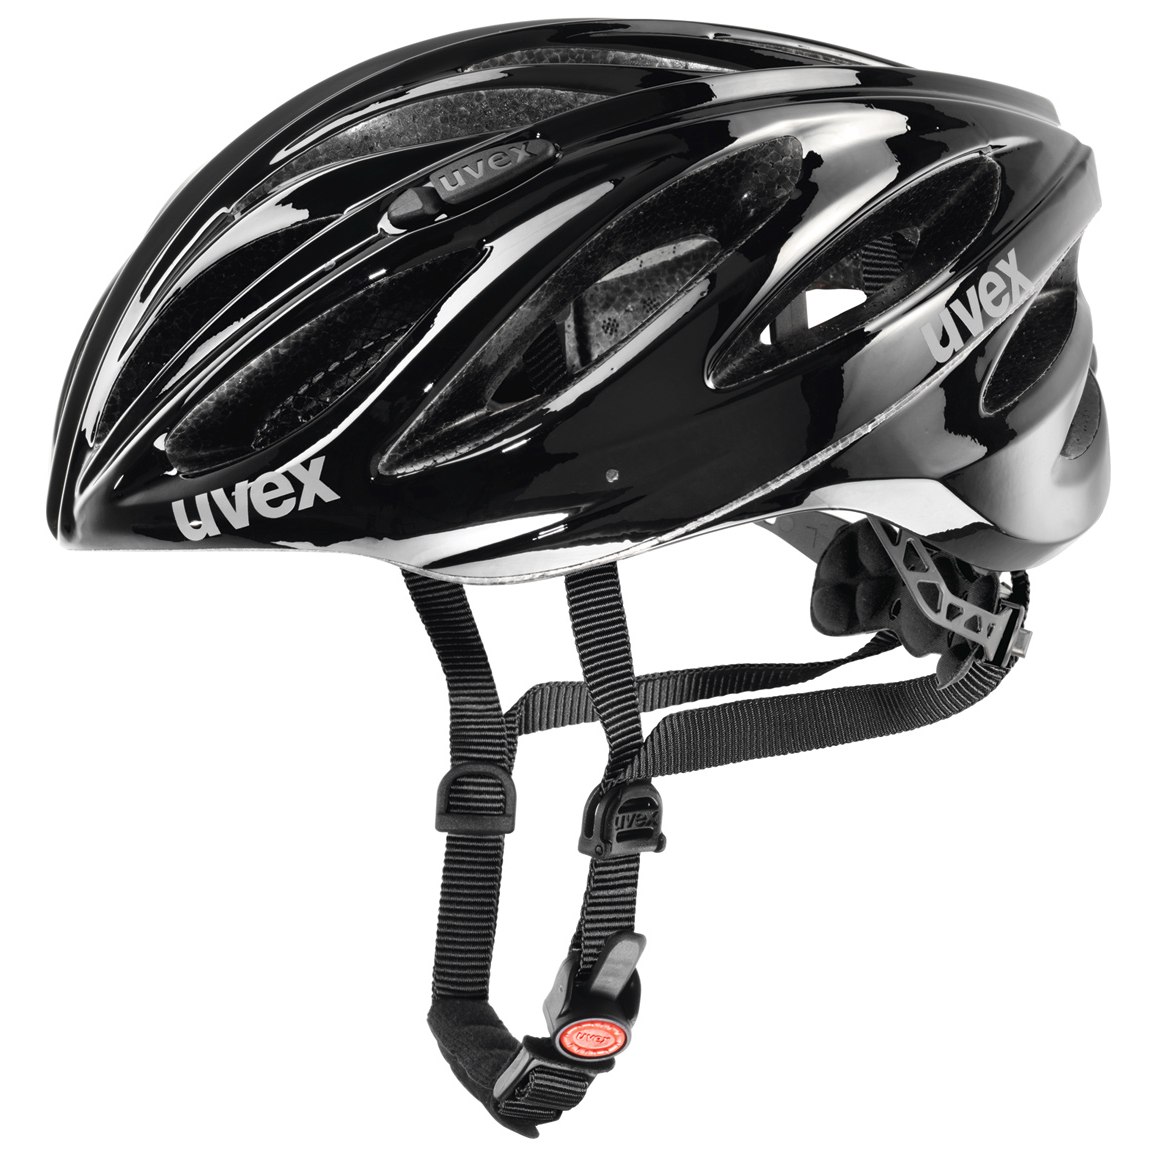 Produktbild von Uvex boss race Helm - schwarz